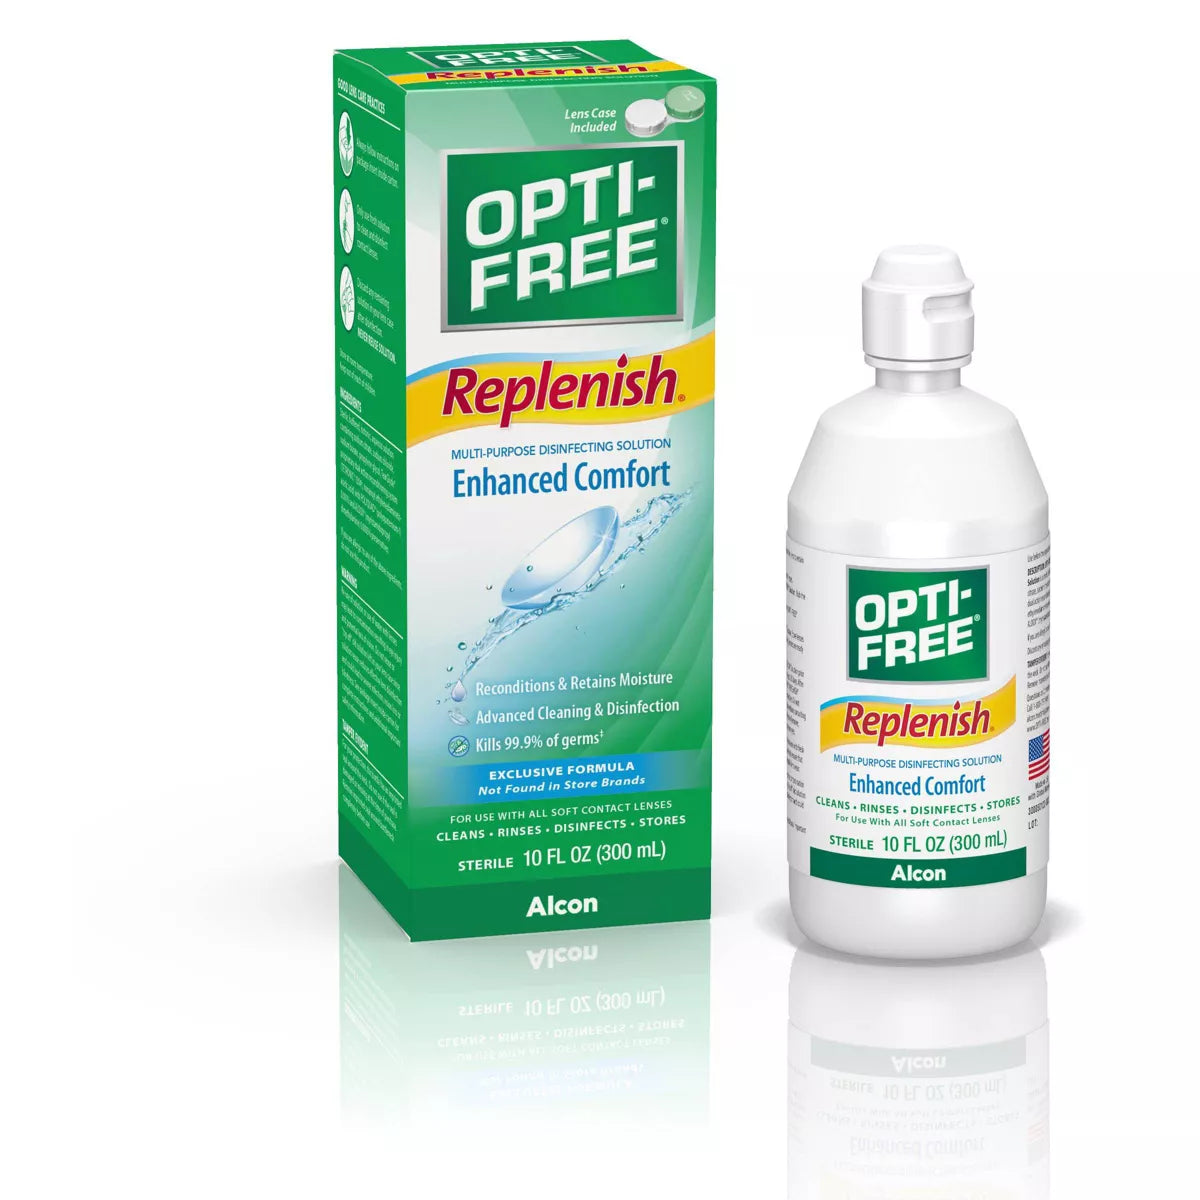 Opti-Free Replenish 4oz